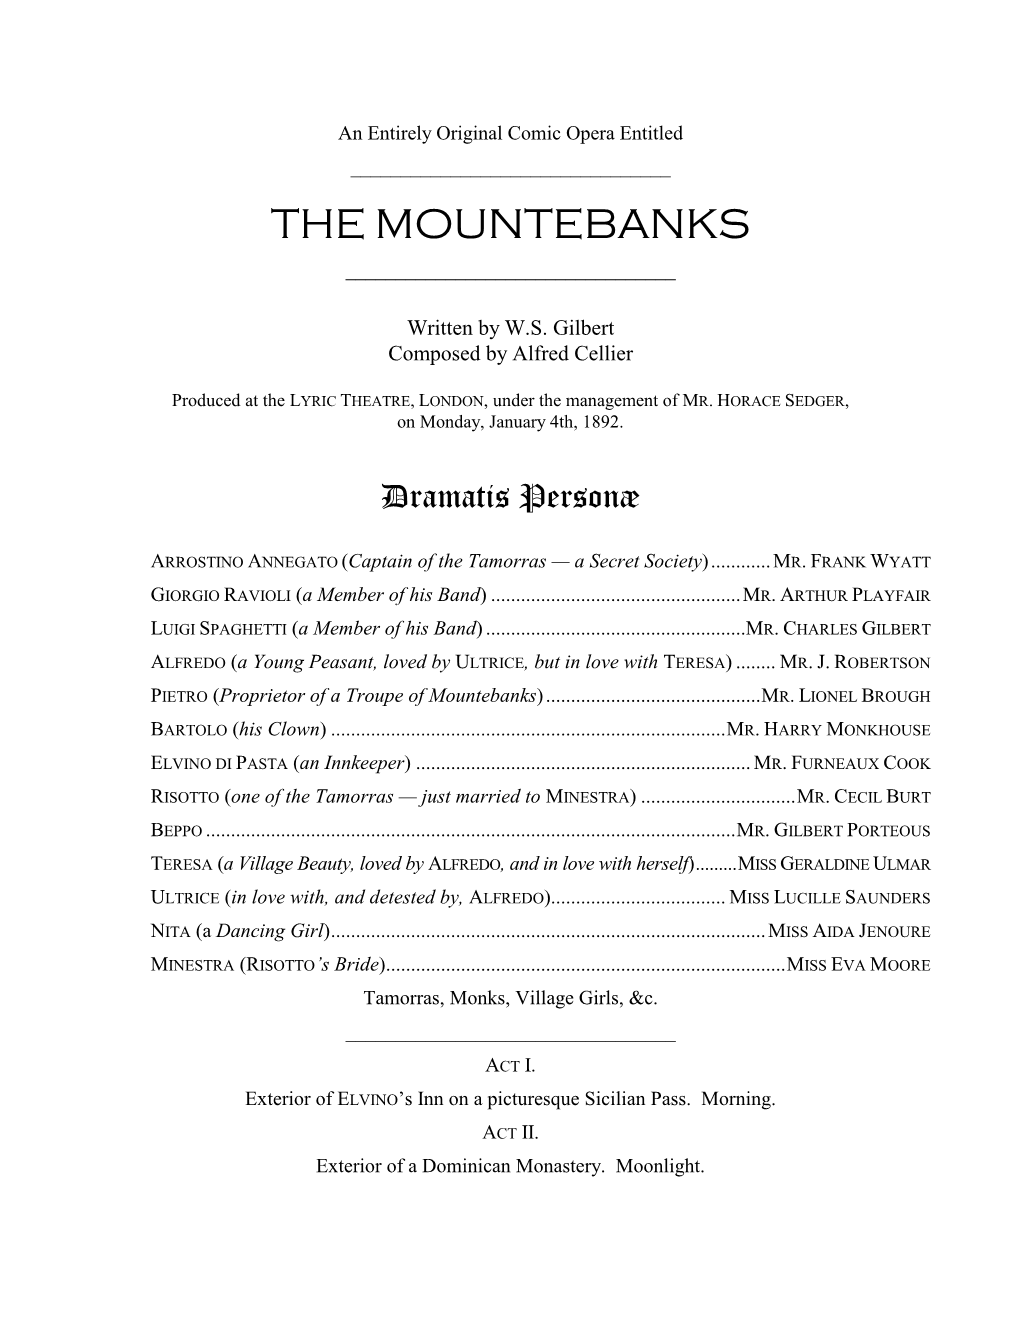 The Mountebanks